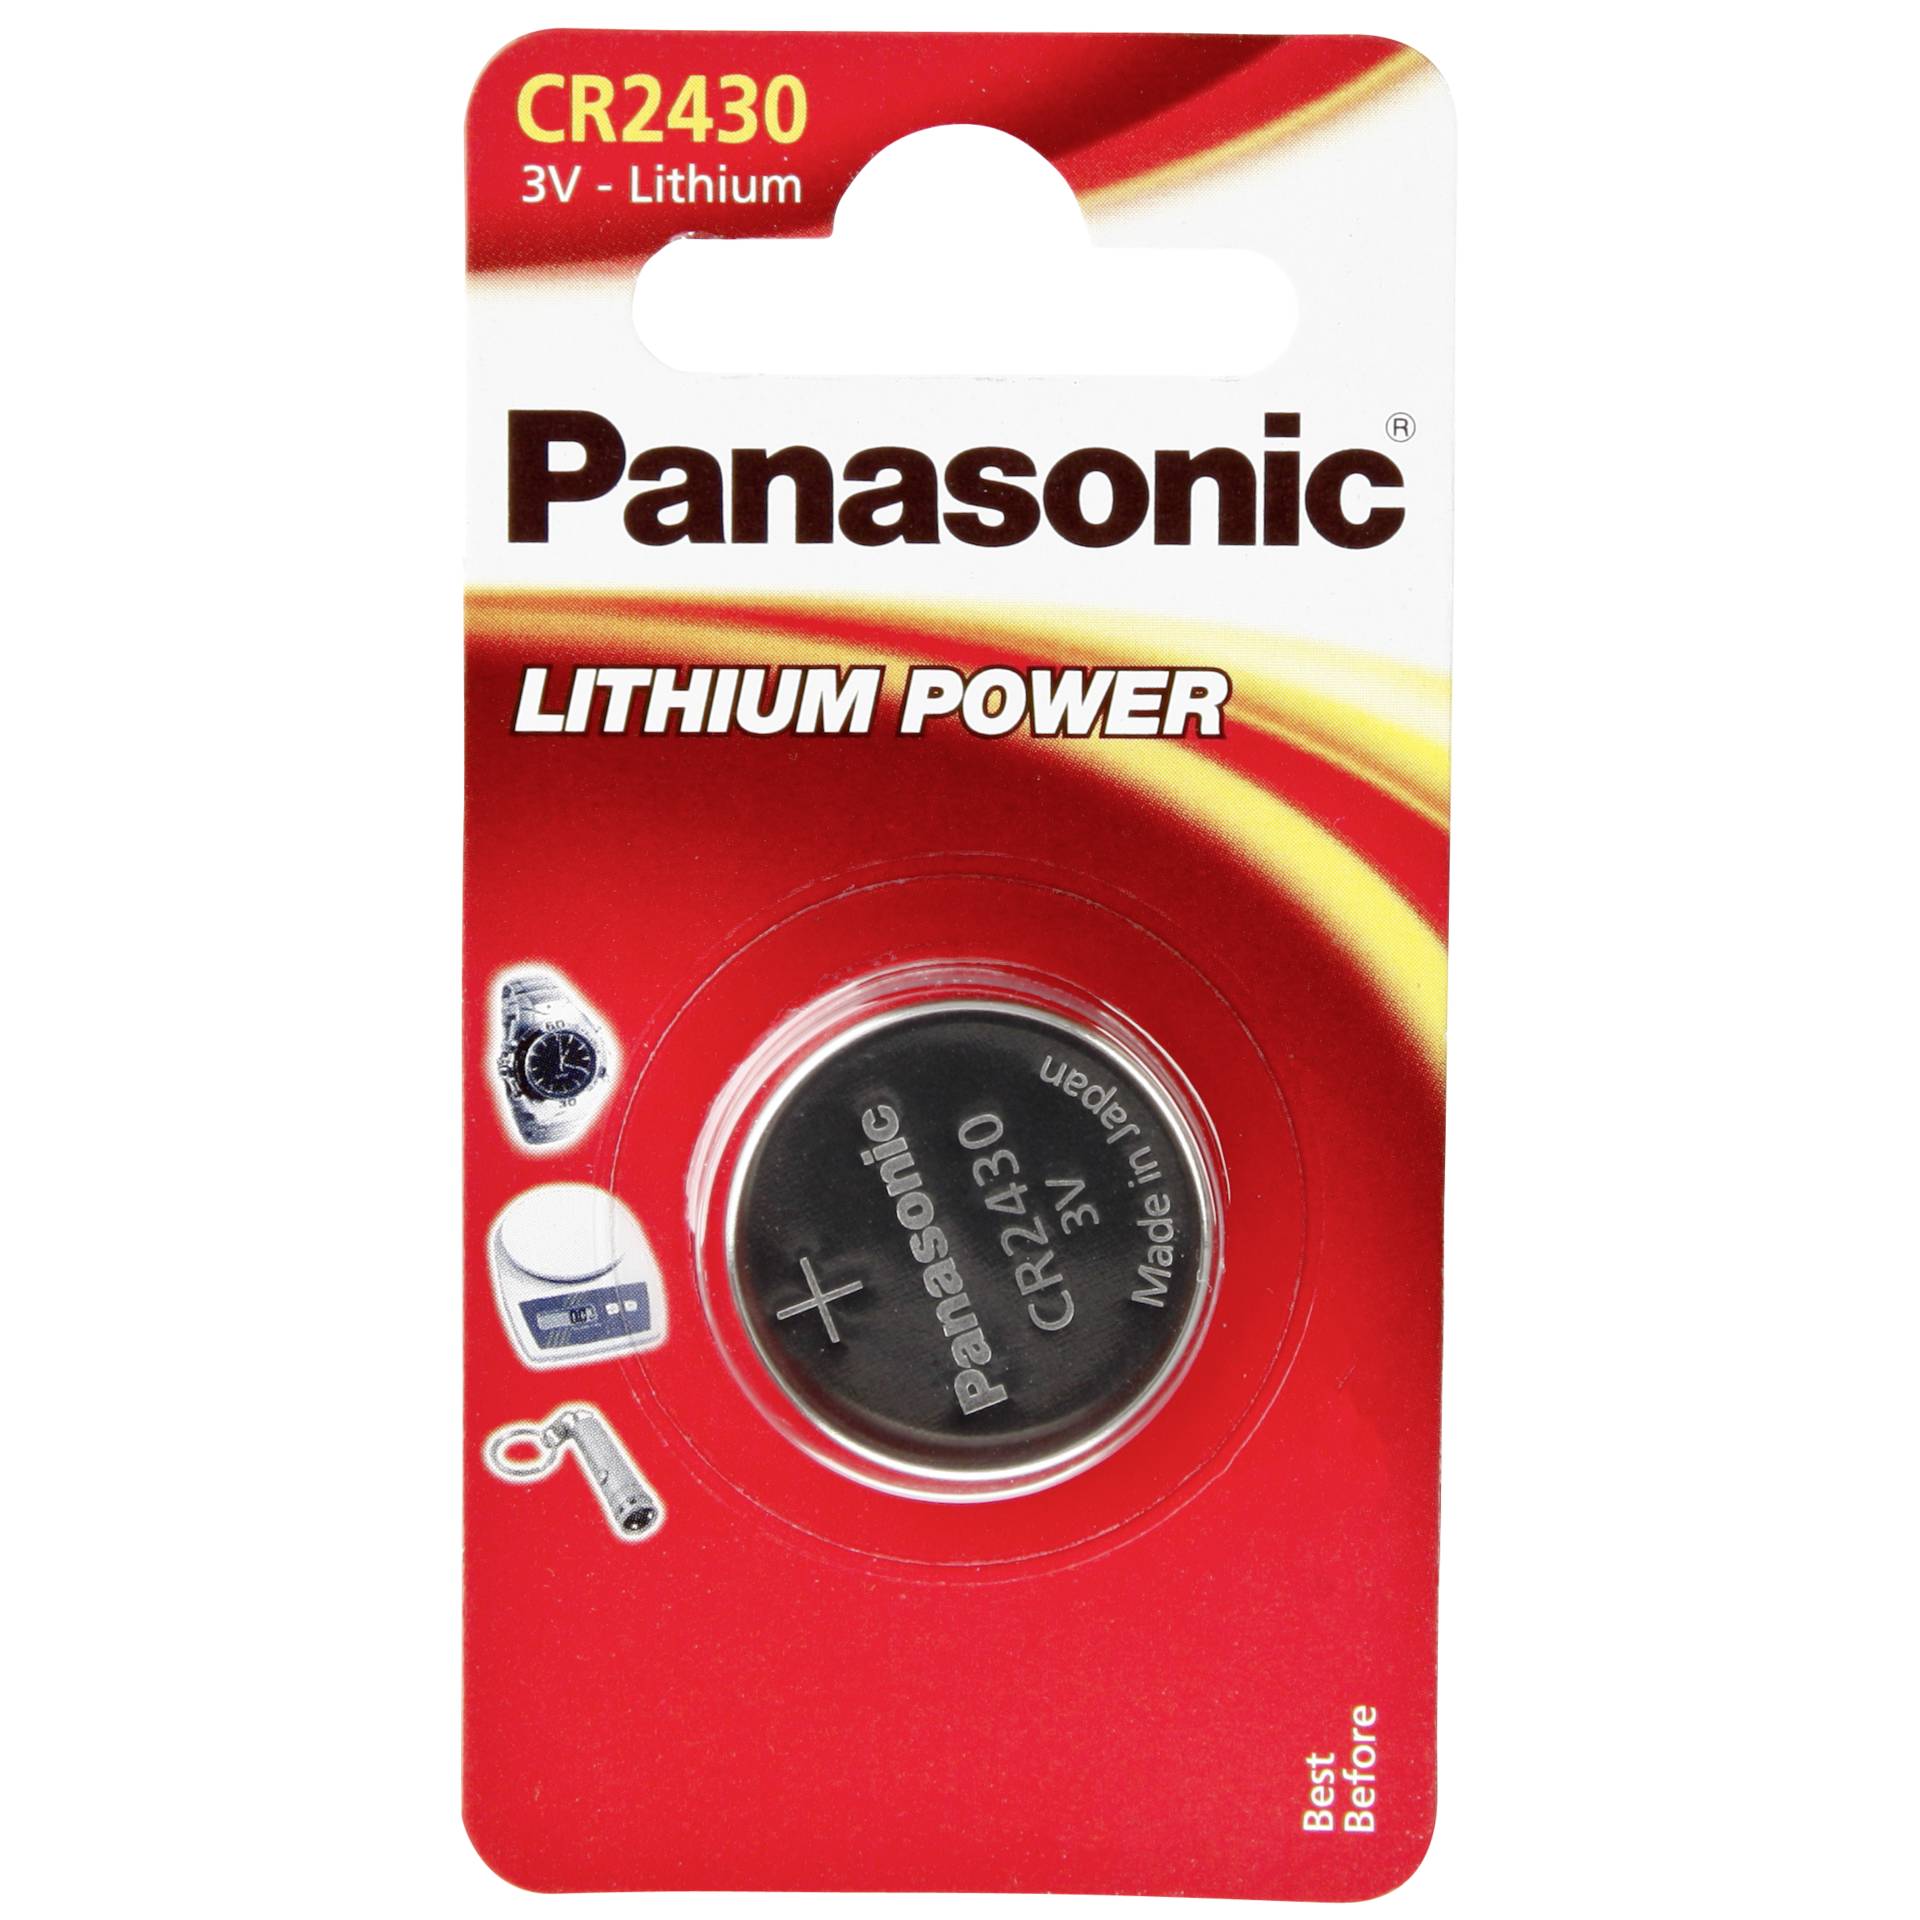 1 Panasonic CR 2430 Lithium Power